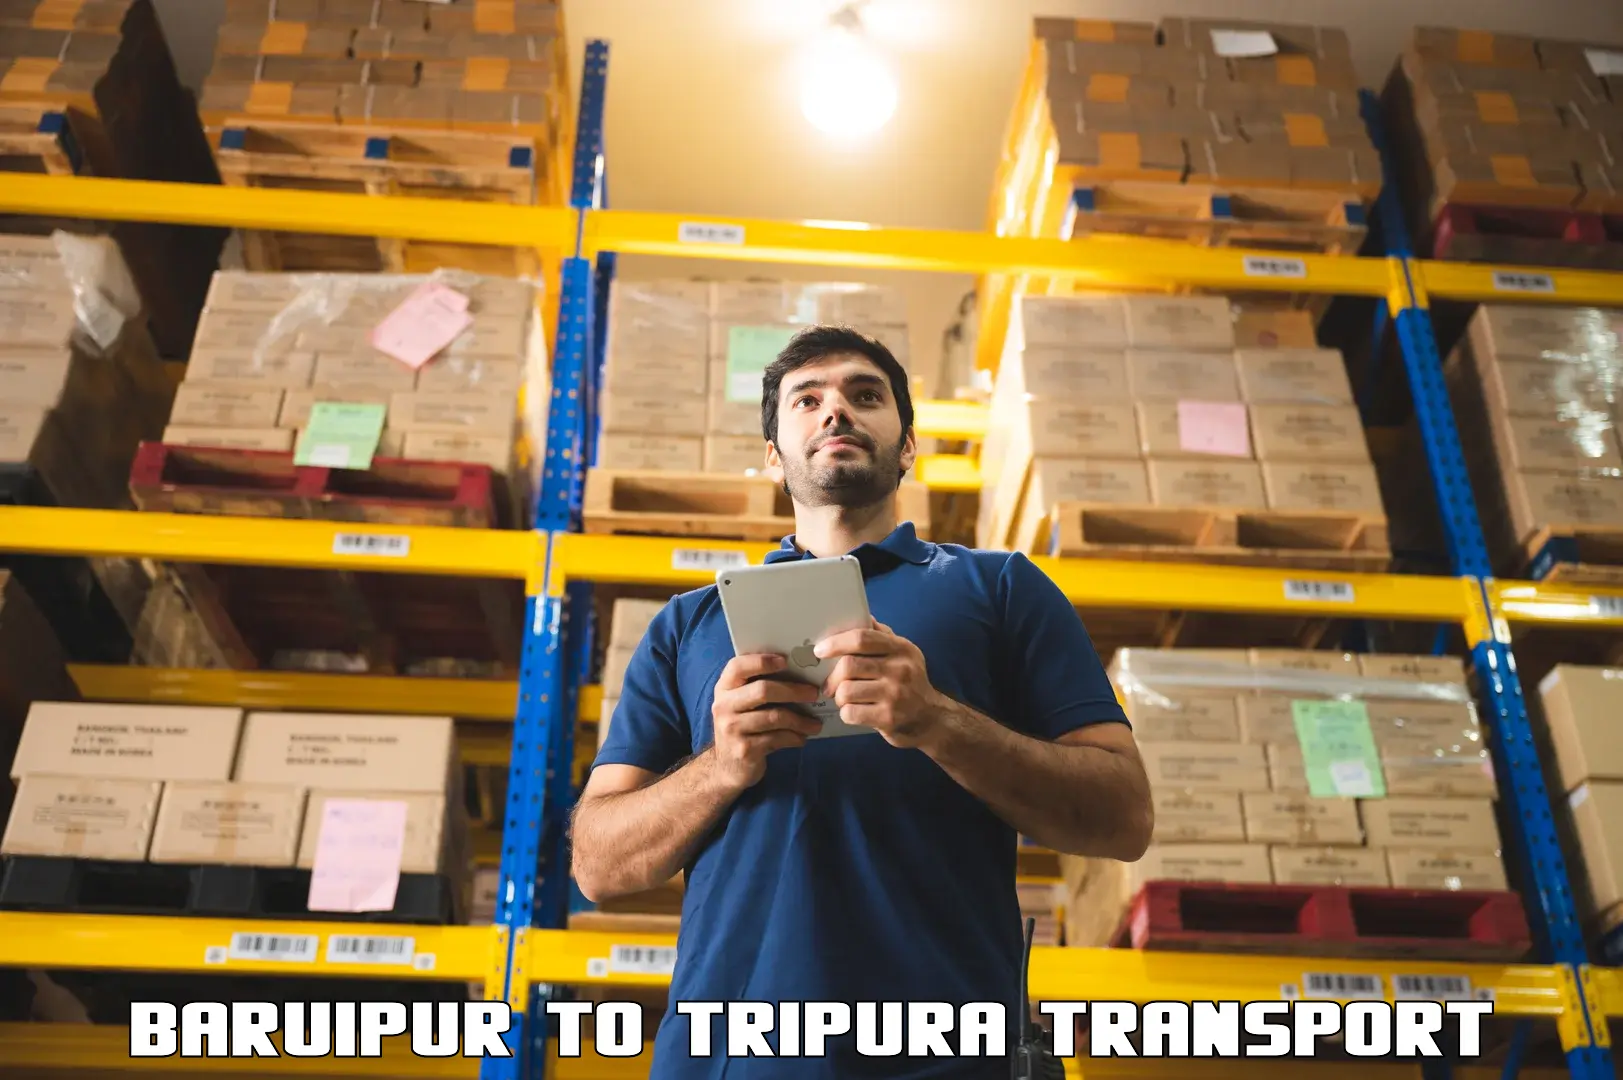 India truck logistics services Baruipur to Udaipur Tripura